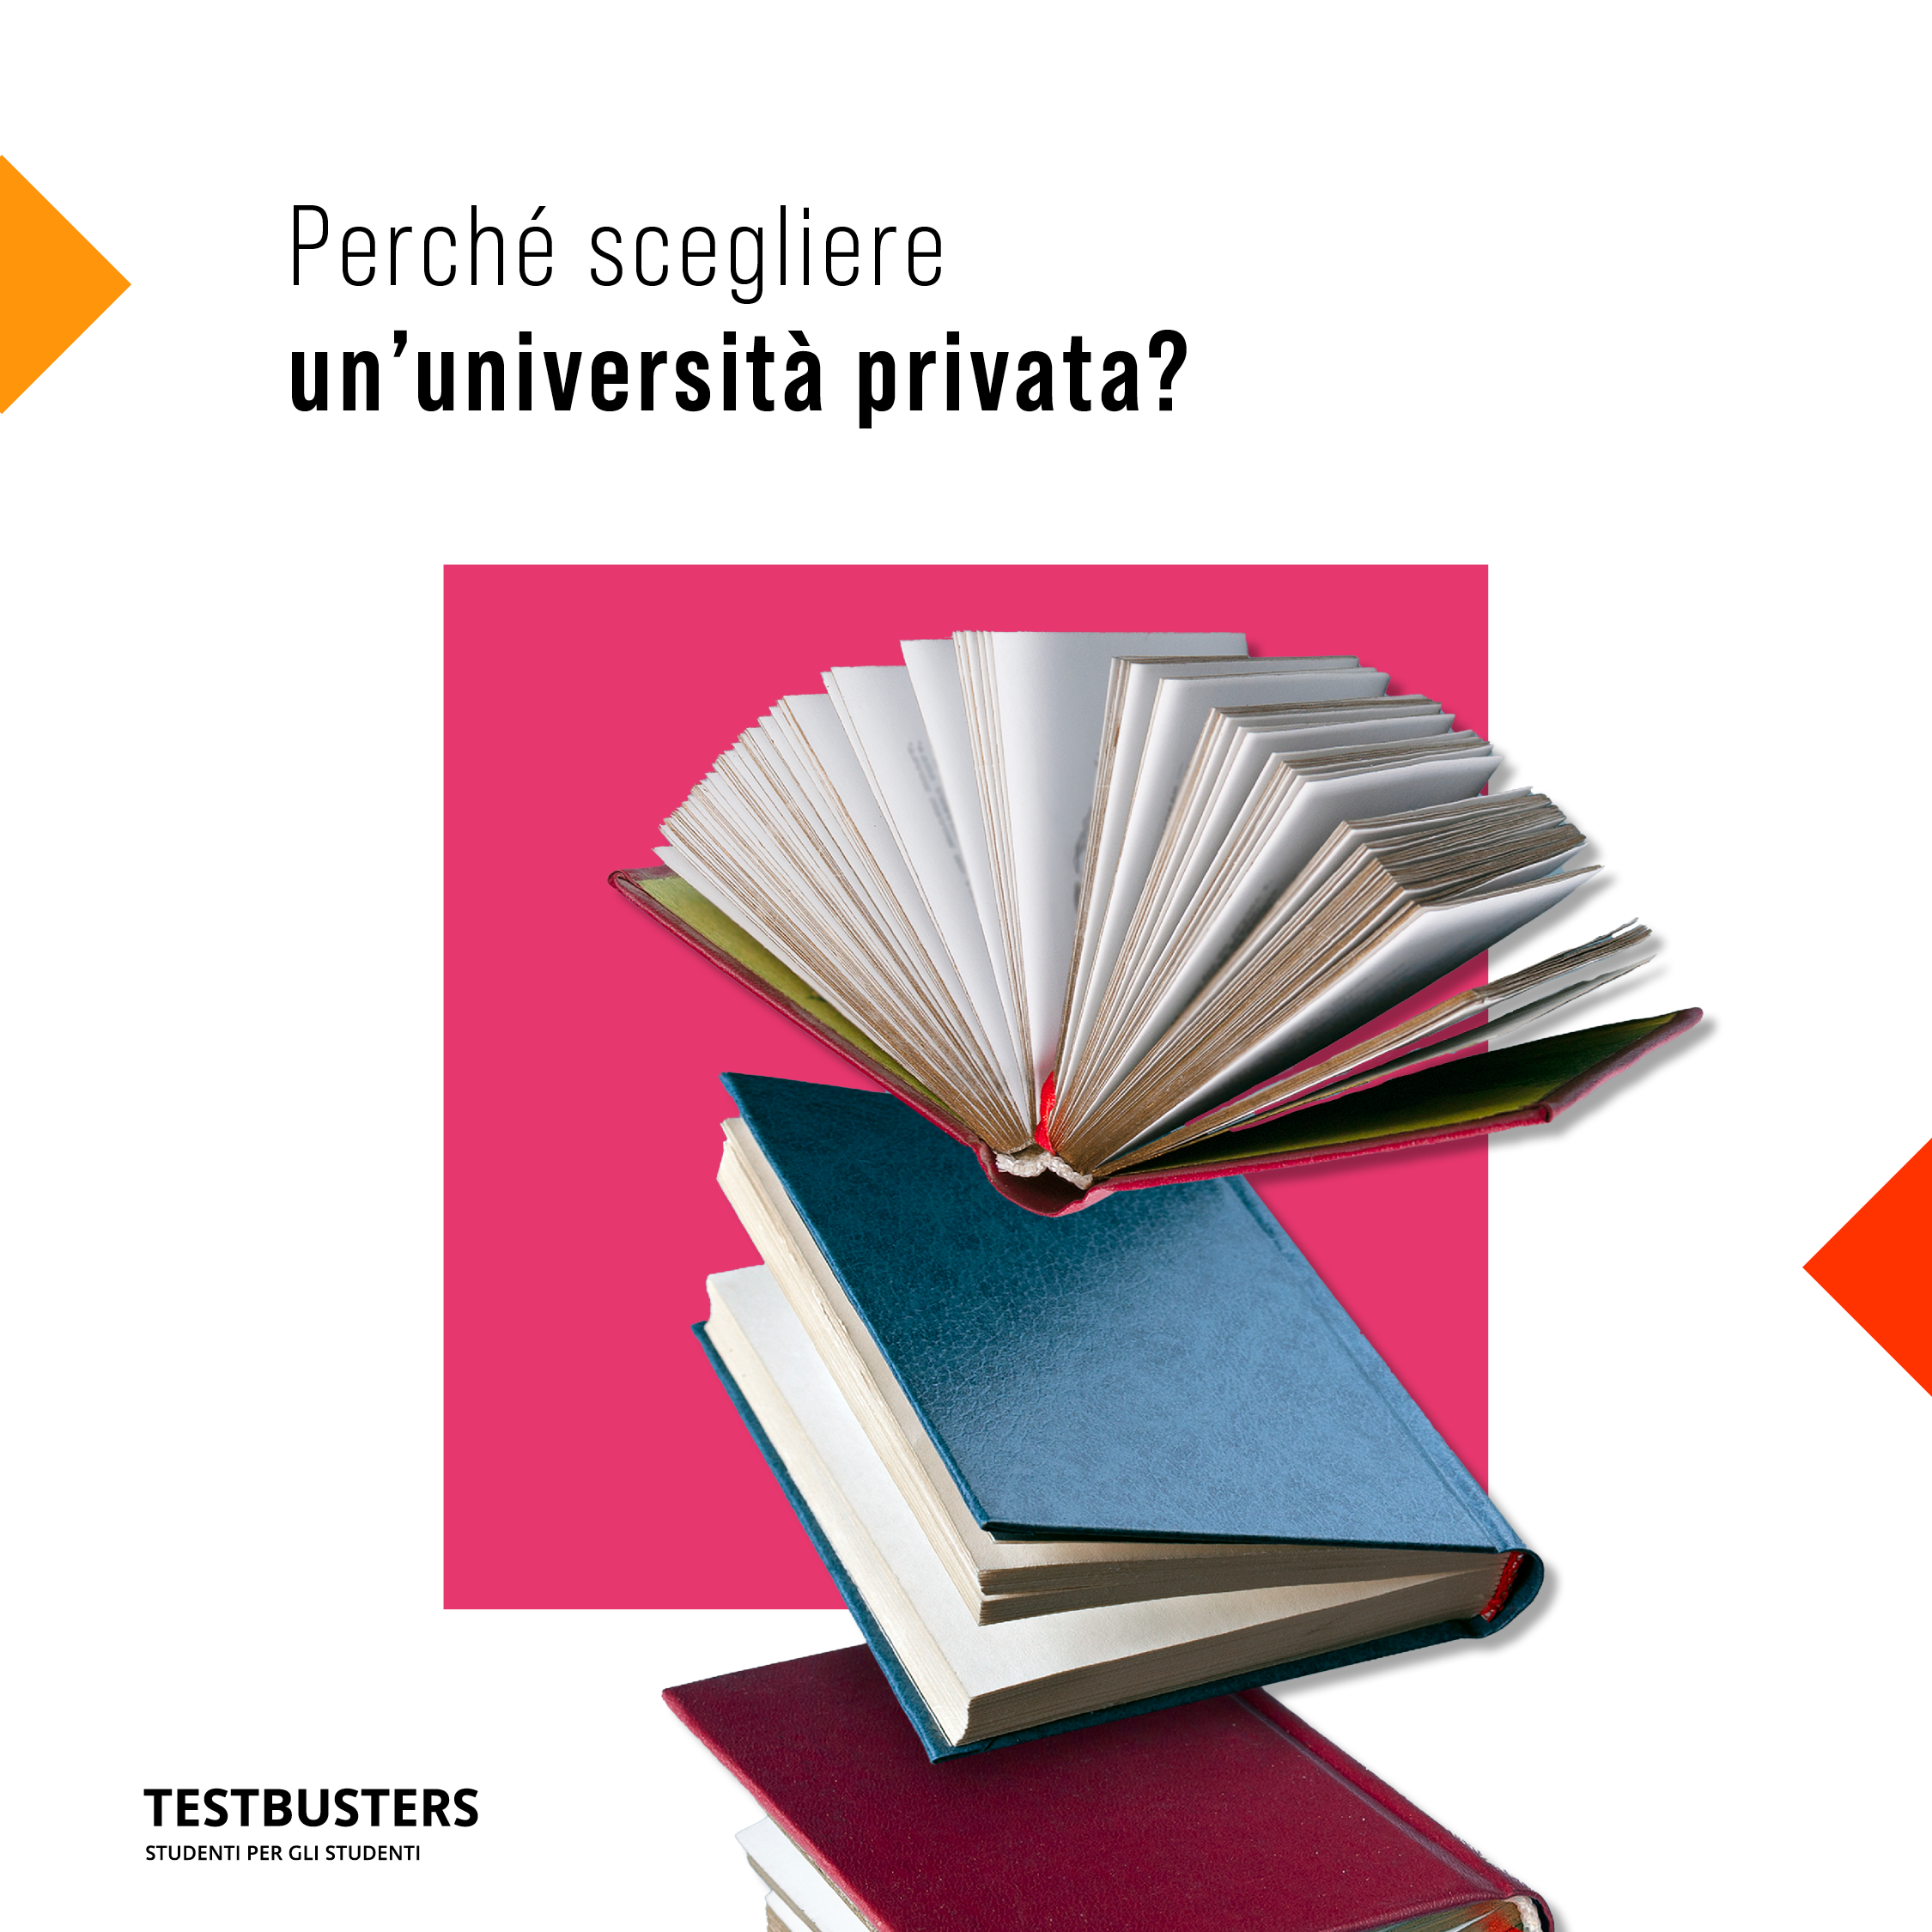 Perché scegliere un'università privata